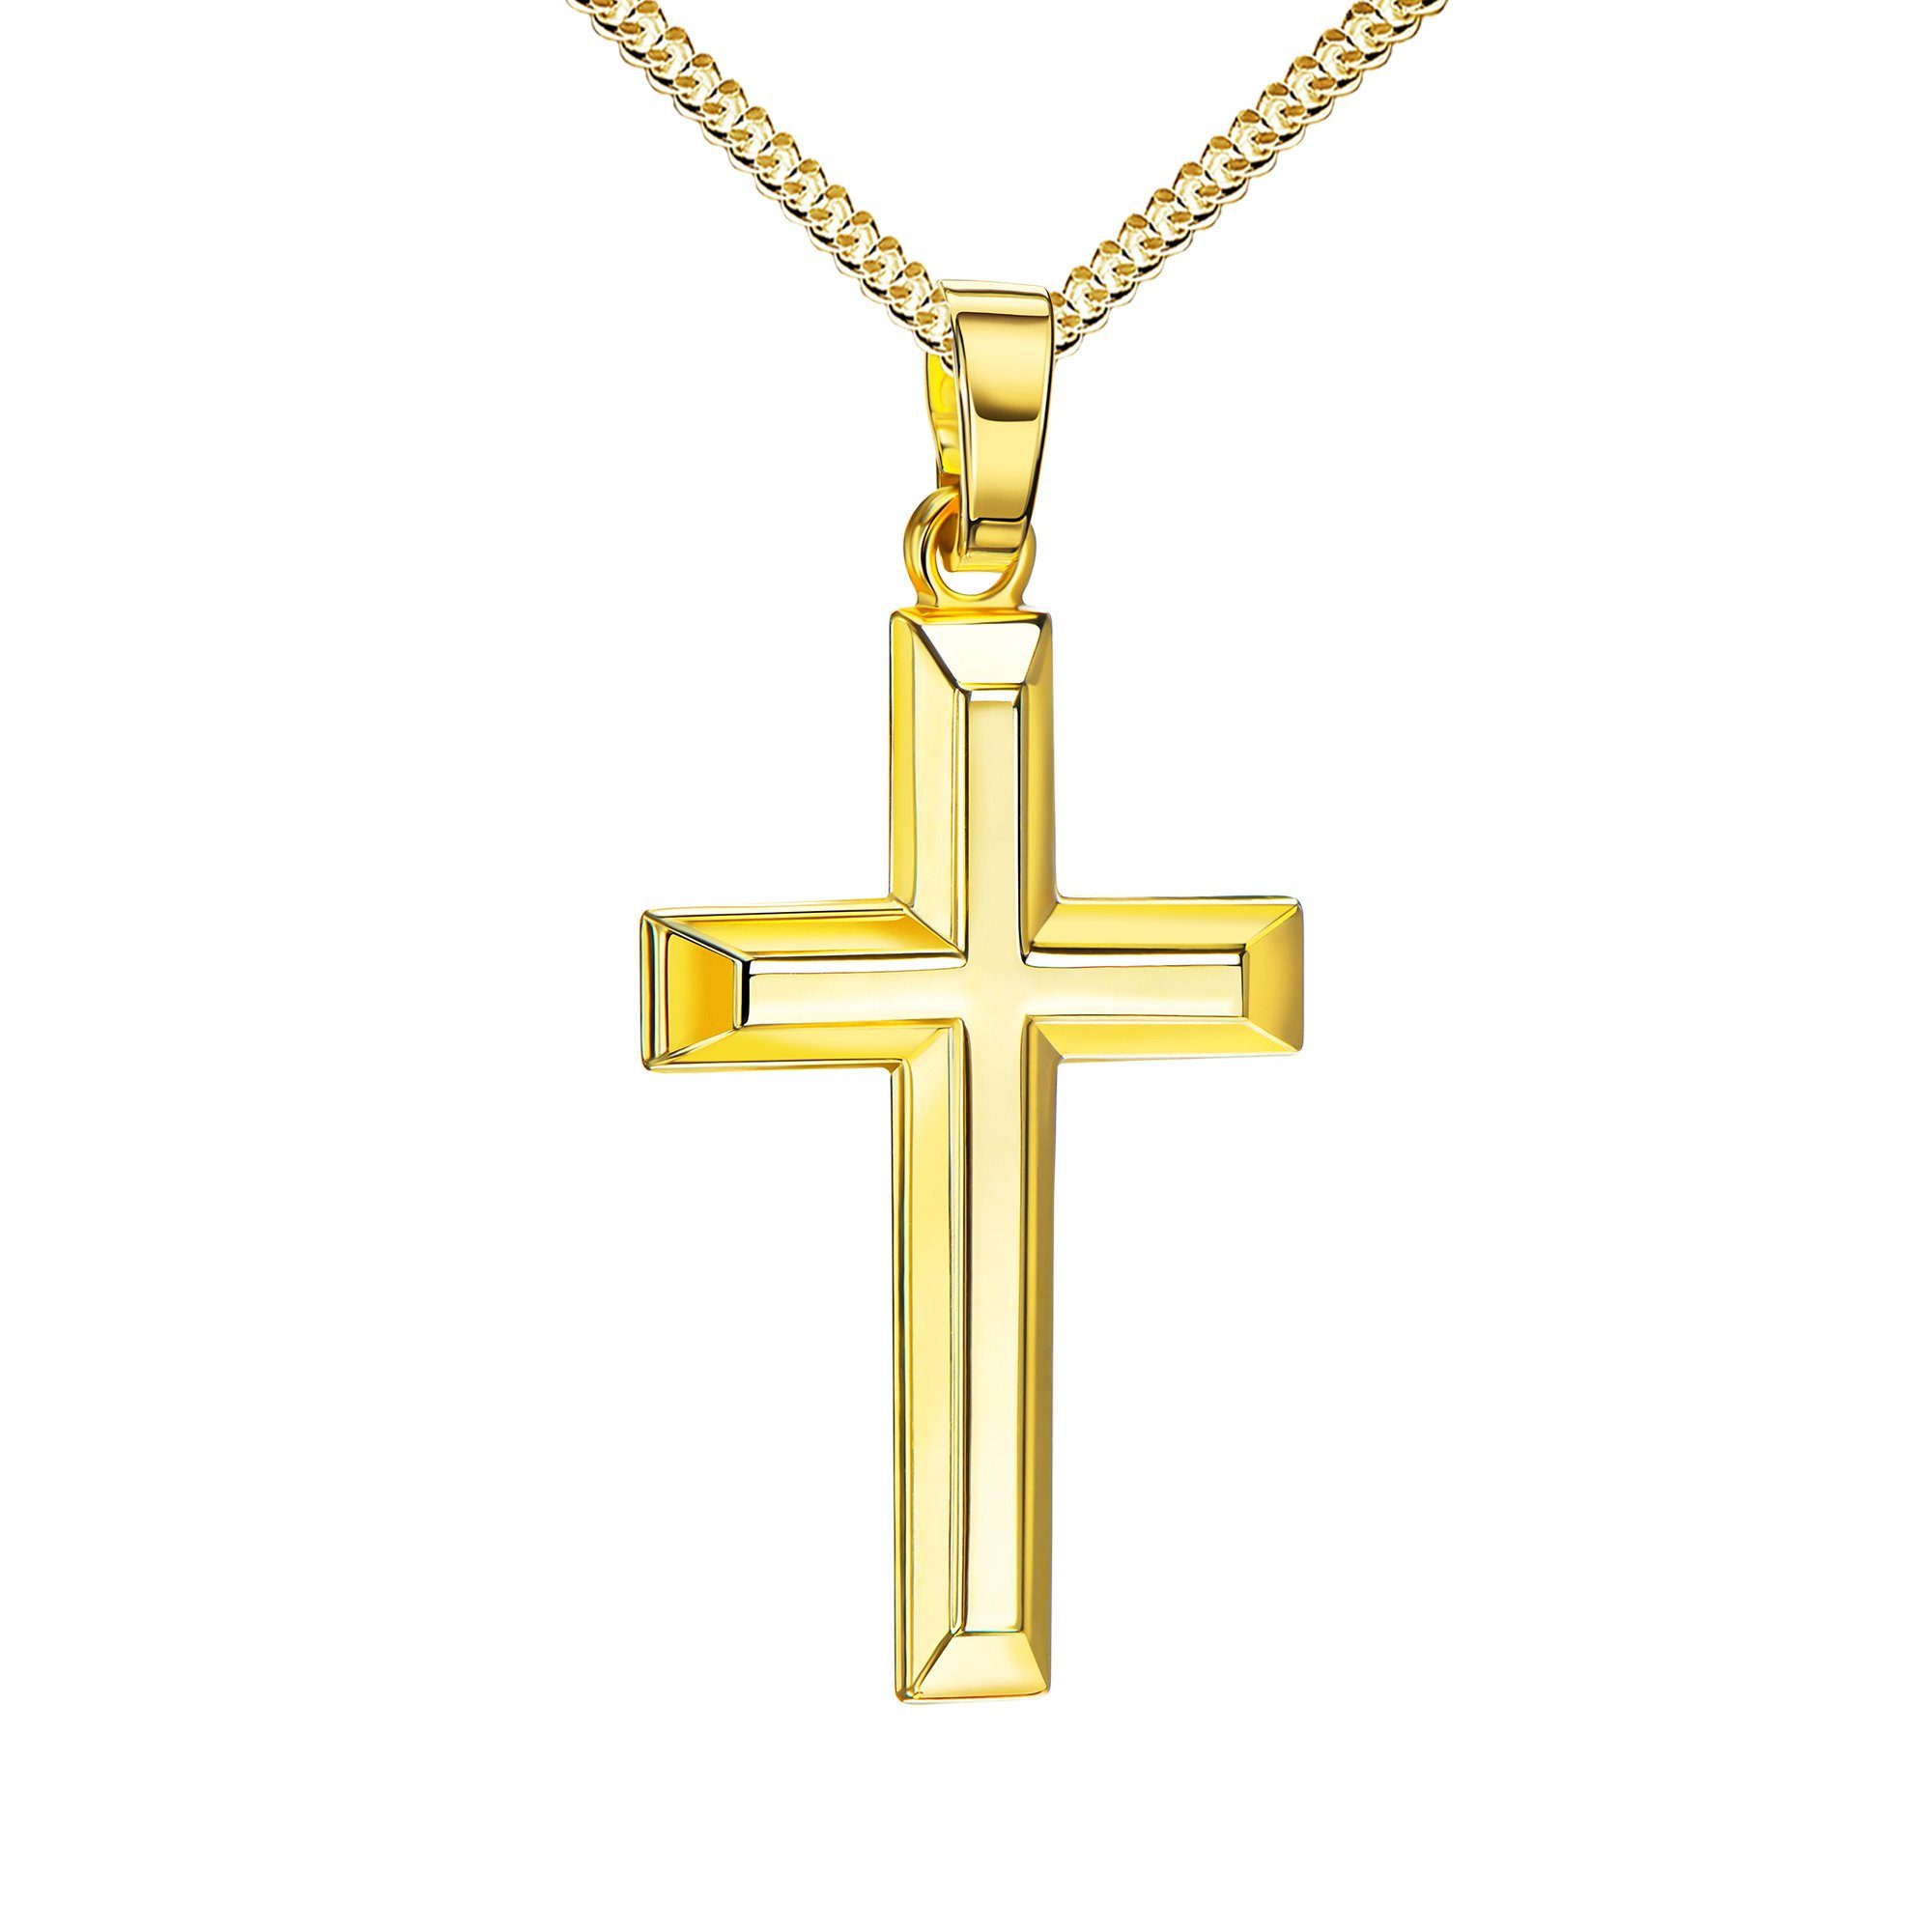 JEVELION Kreuzkette Kreuz Anhänger 333 Gold - Made in Germany (Goldkreuz, für Damen und Herren), MIT KETTE vergoldet- Länge wählbar 36 - 70 cm.